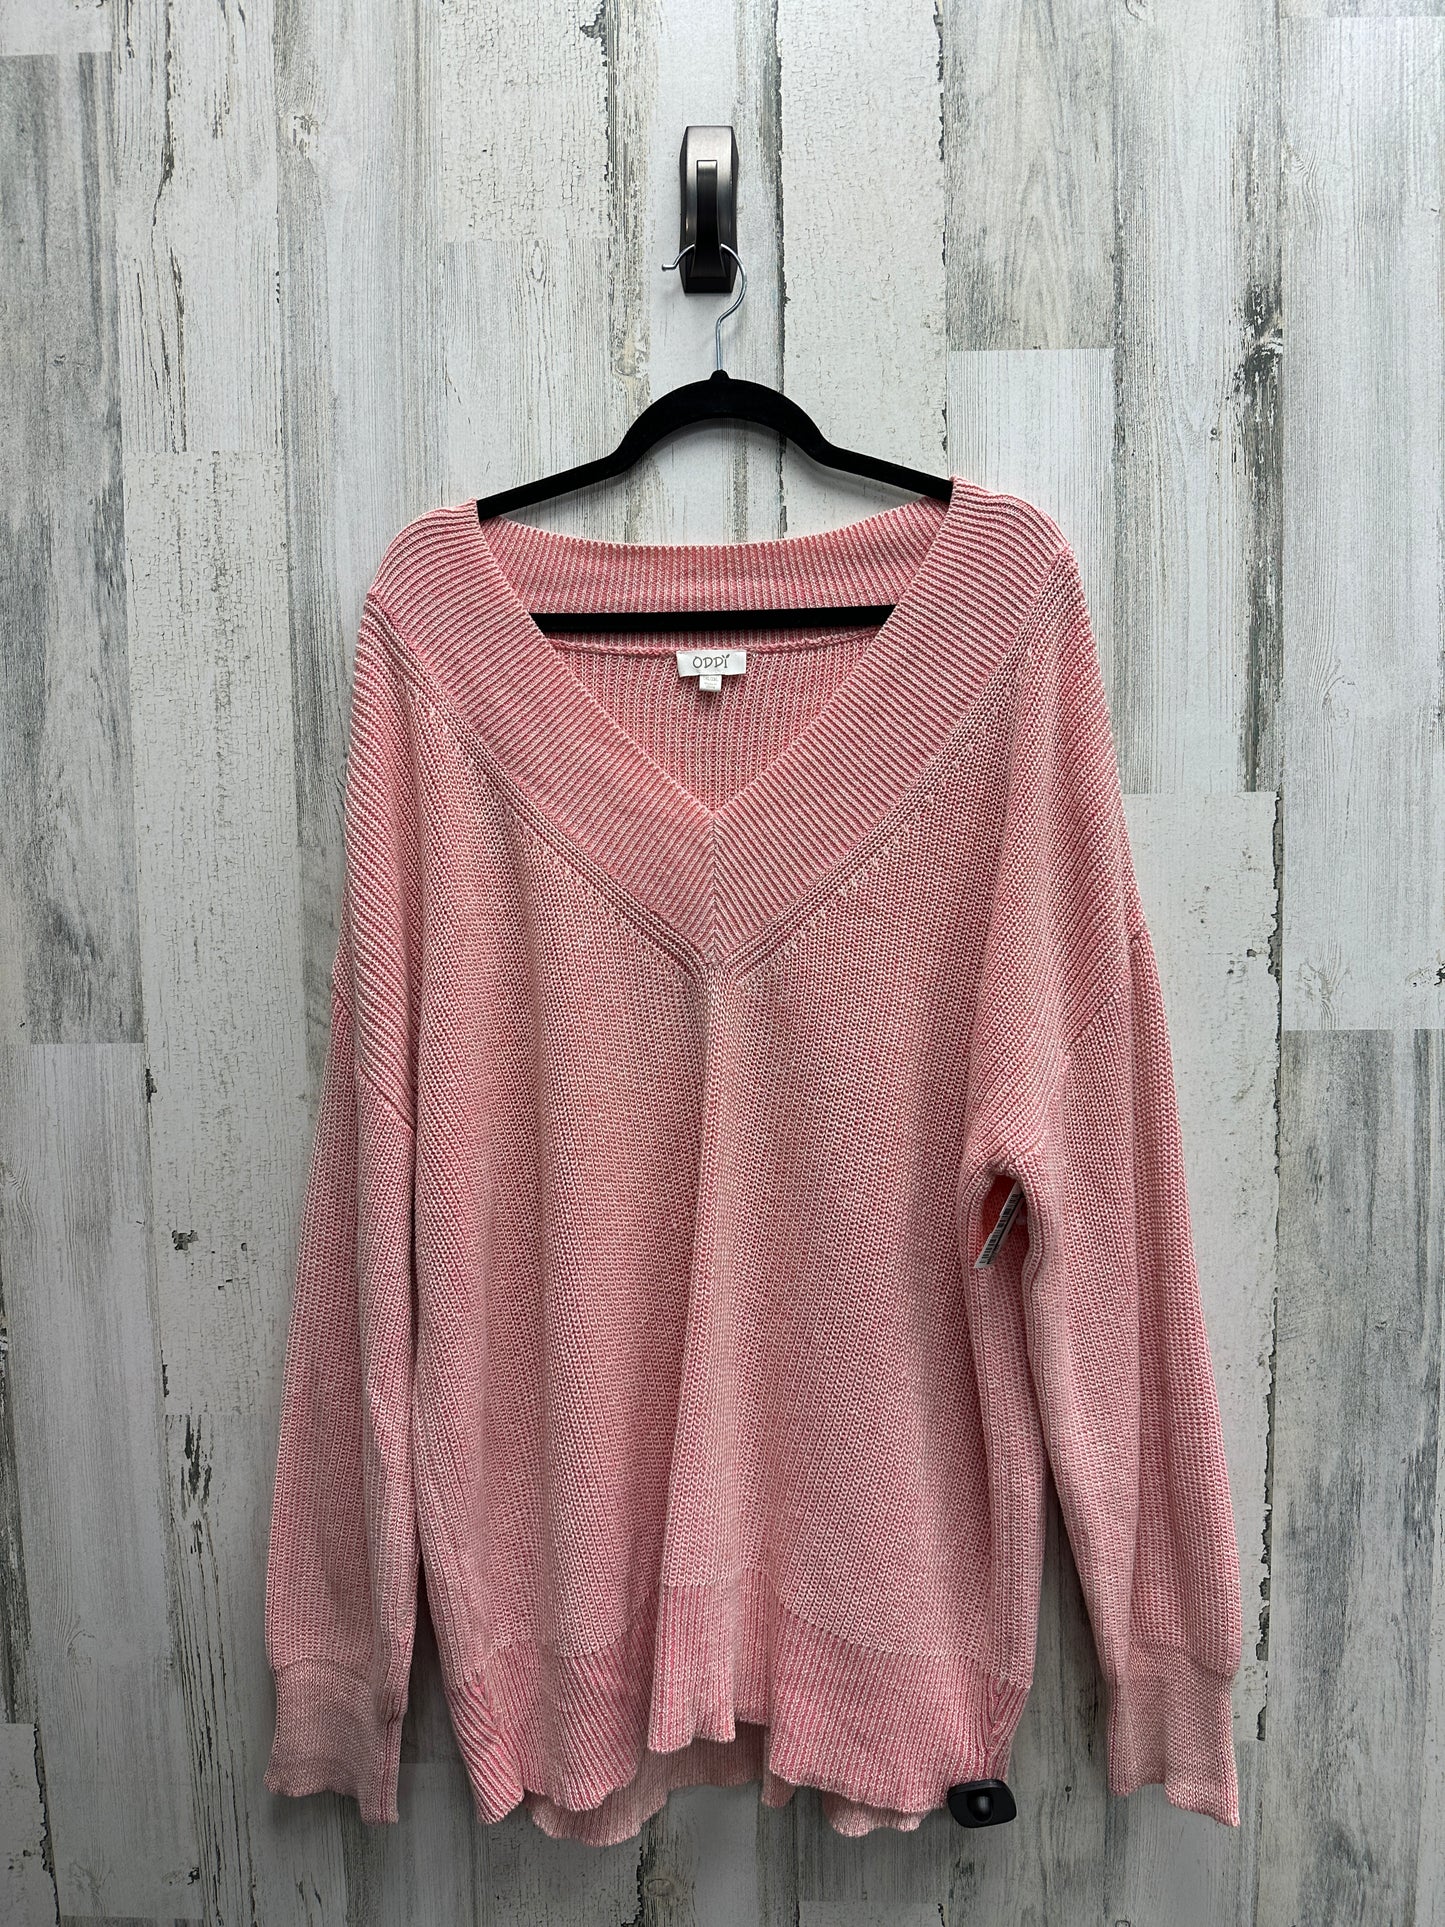 Sweater By Oddi  Size: 2x